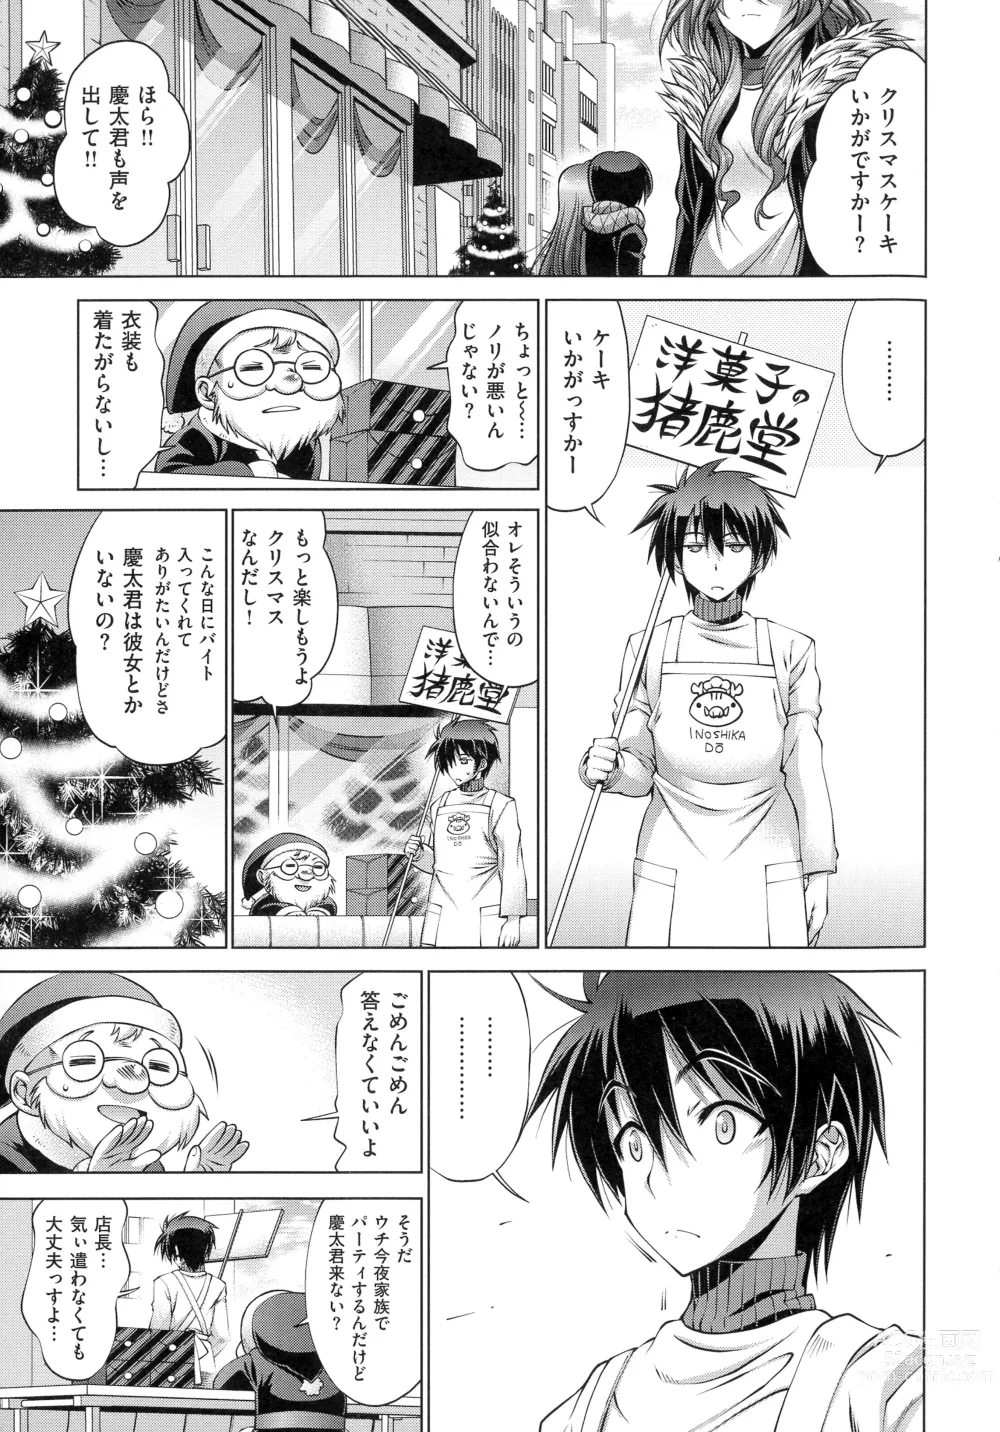 Page 228 of manga Kanojo wa Manatsu no Santa Claus